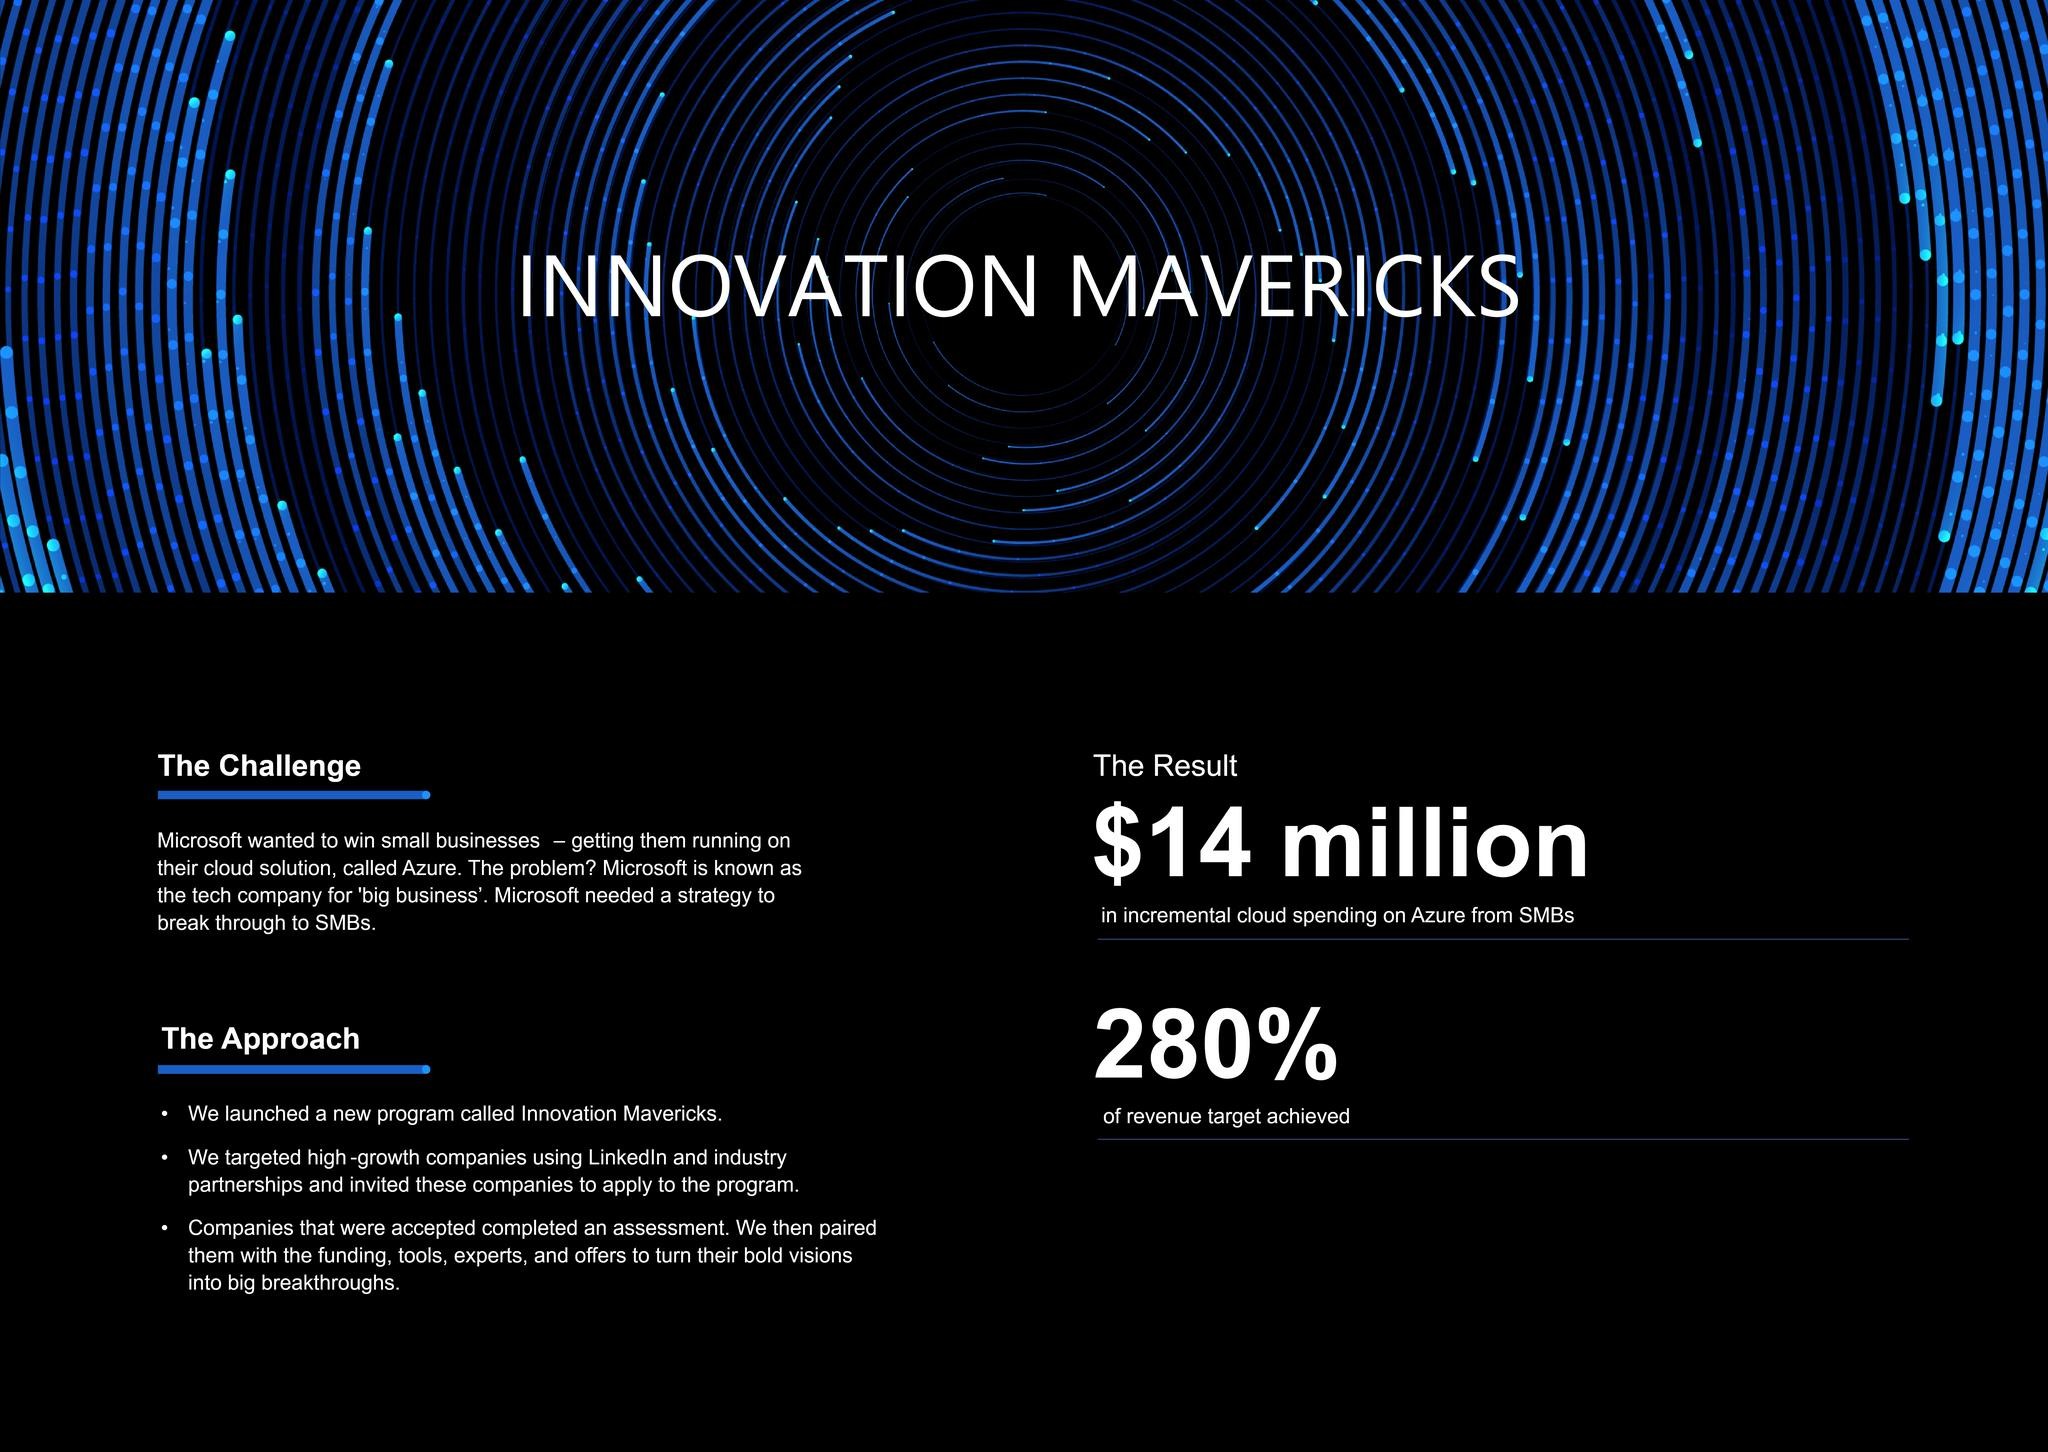 Innovation Mavericks